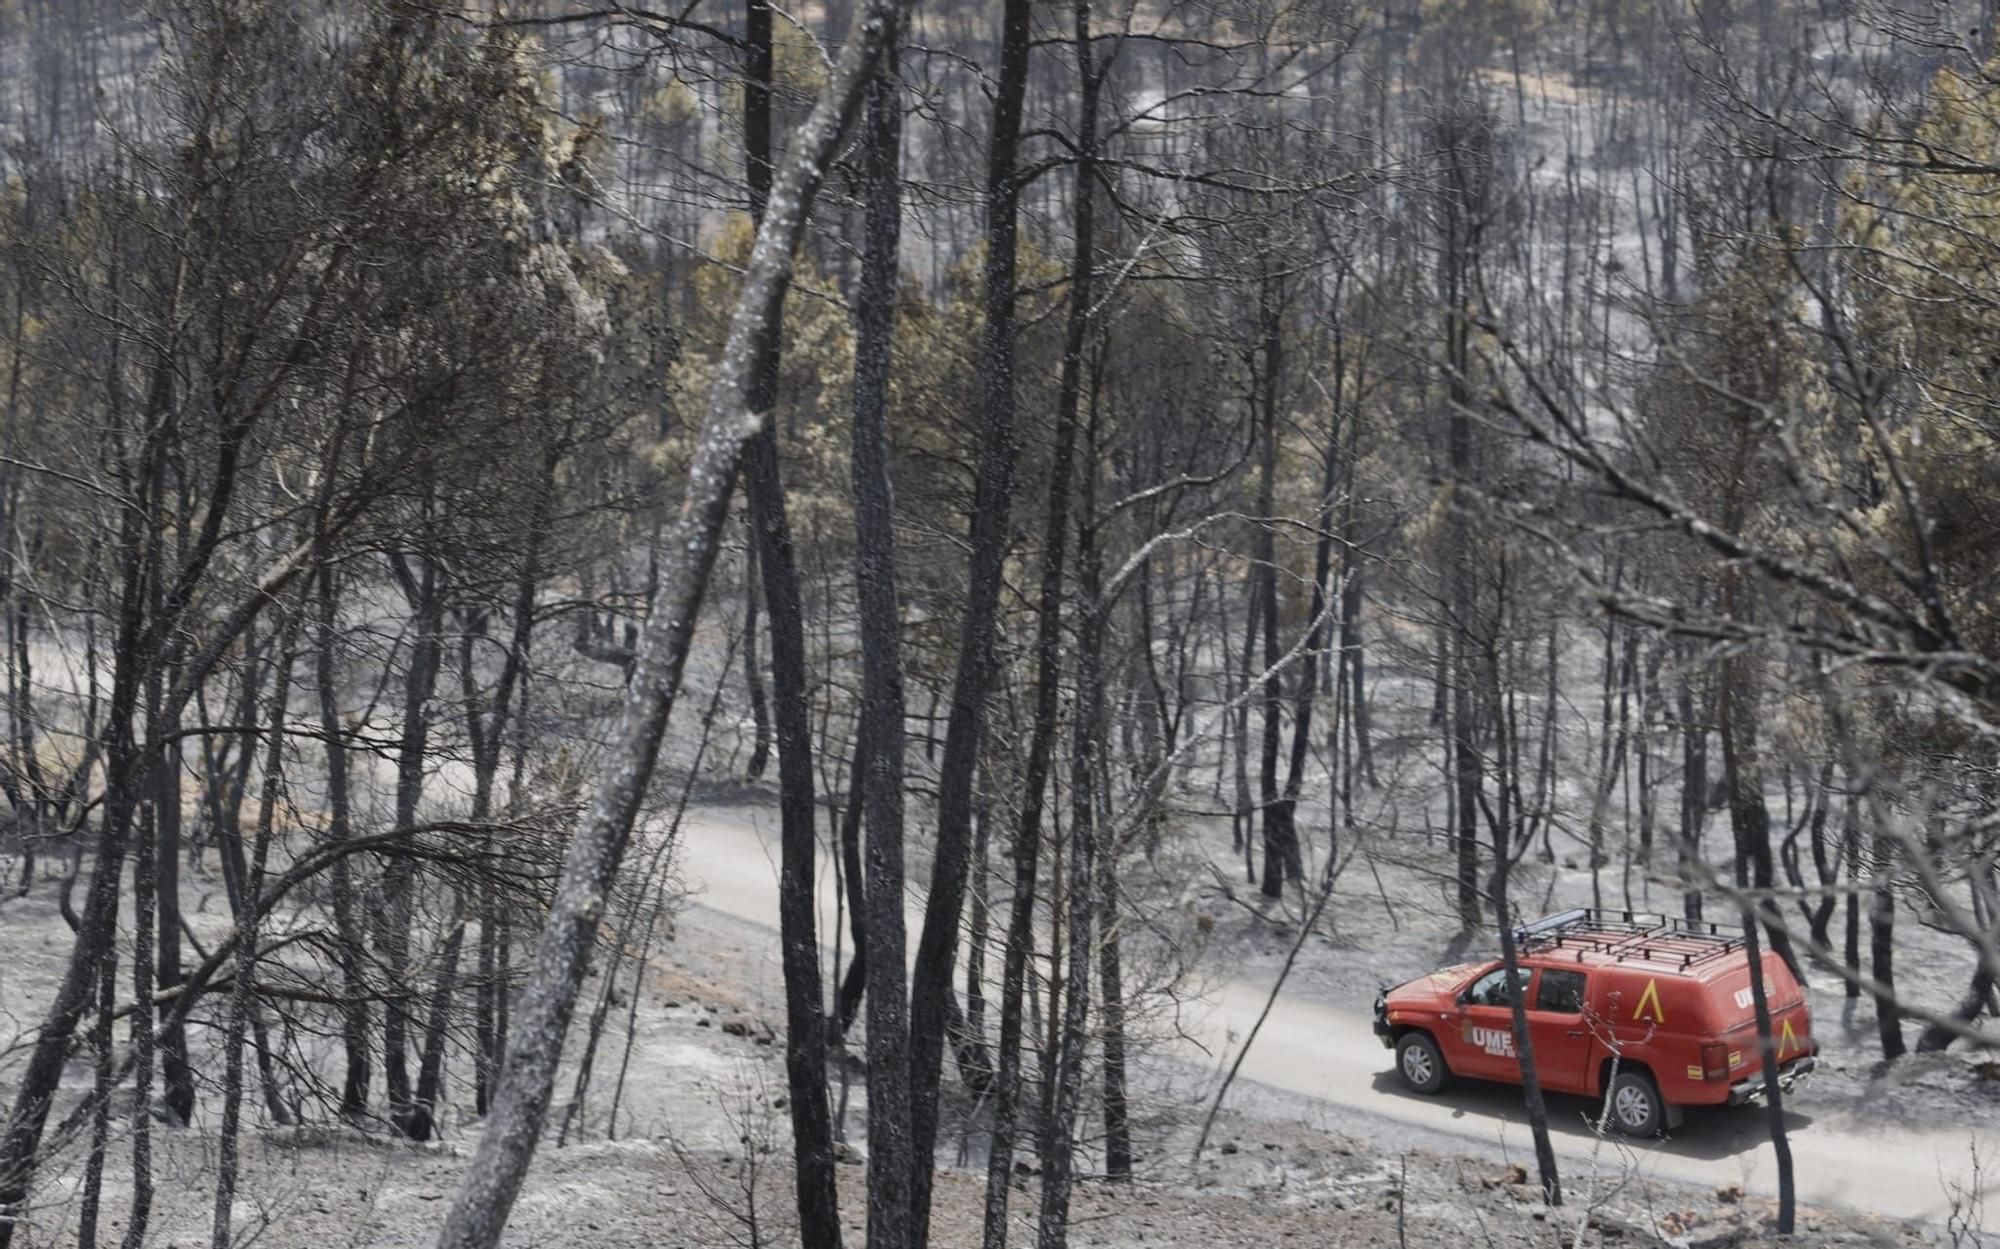 El incendio de Venta del Moro ha calcinado más de mil hectáreas